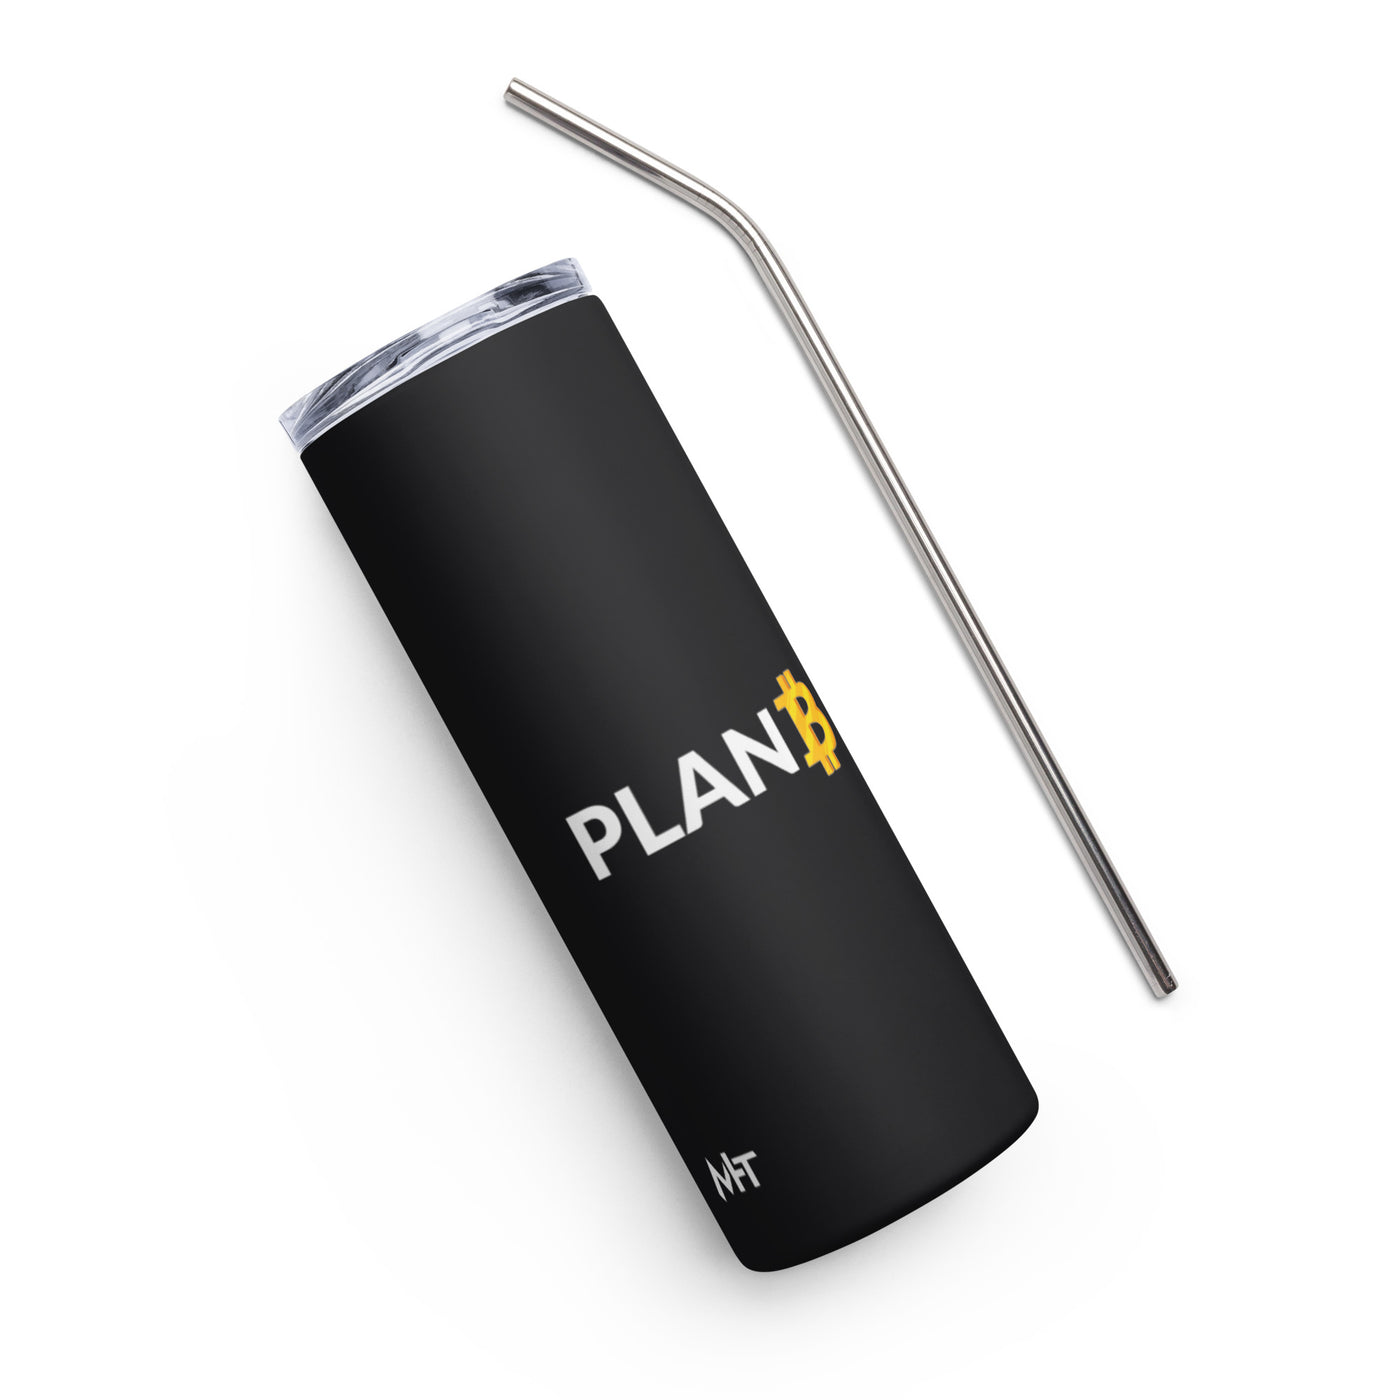 Plan B v1 - Stainless steel tumbler